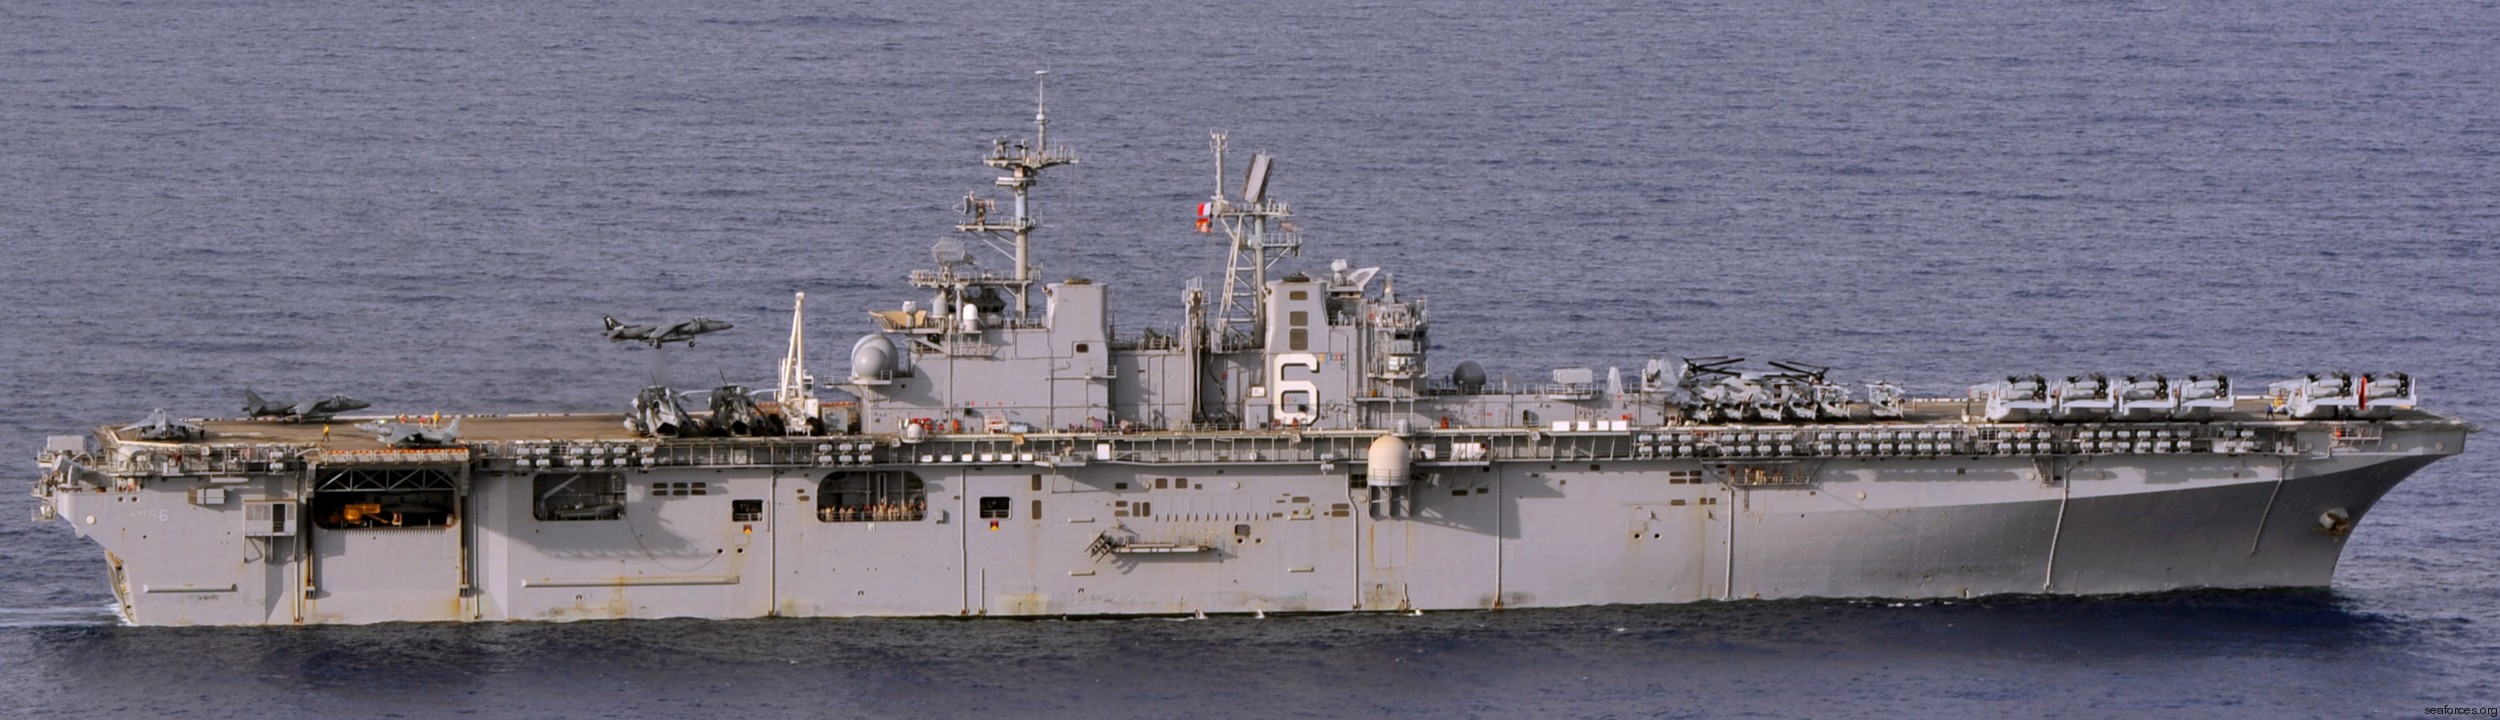 lhd-6 uss bonhomme richard amphibious assault ship landing helicopter dock wasp class 177